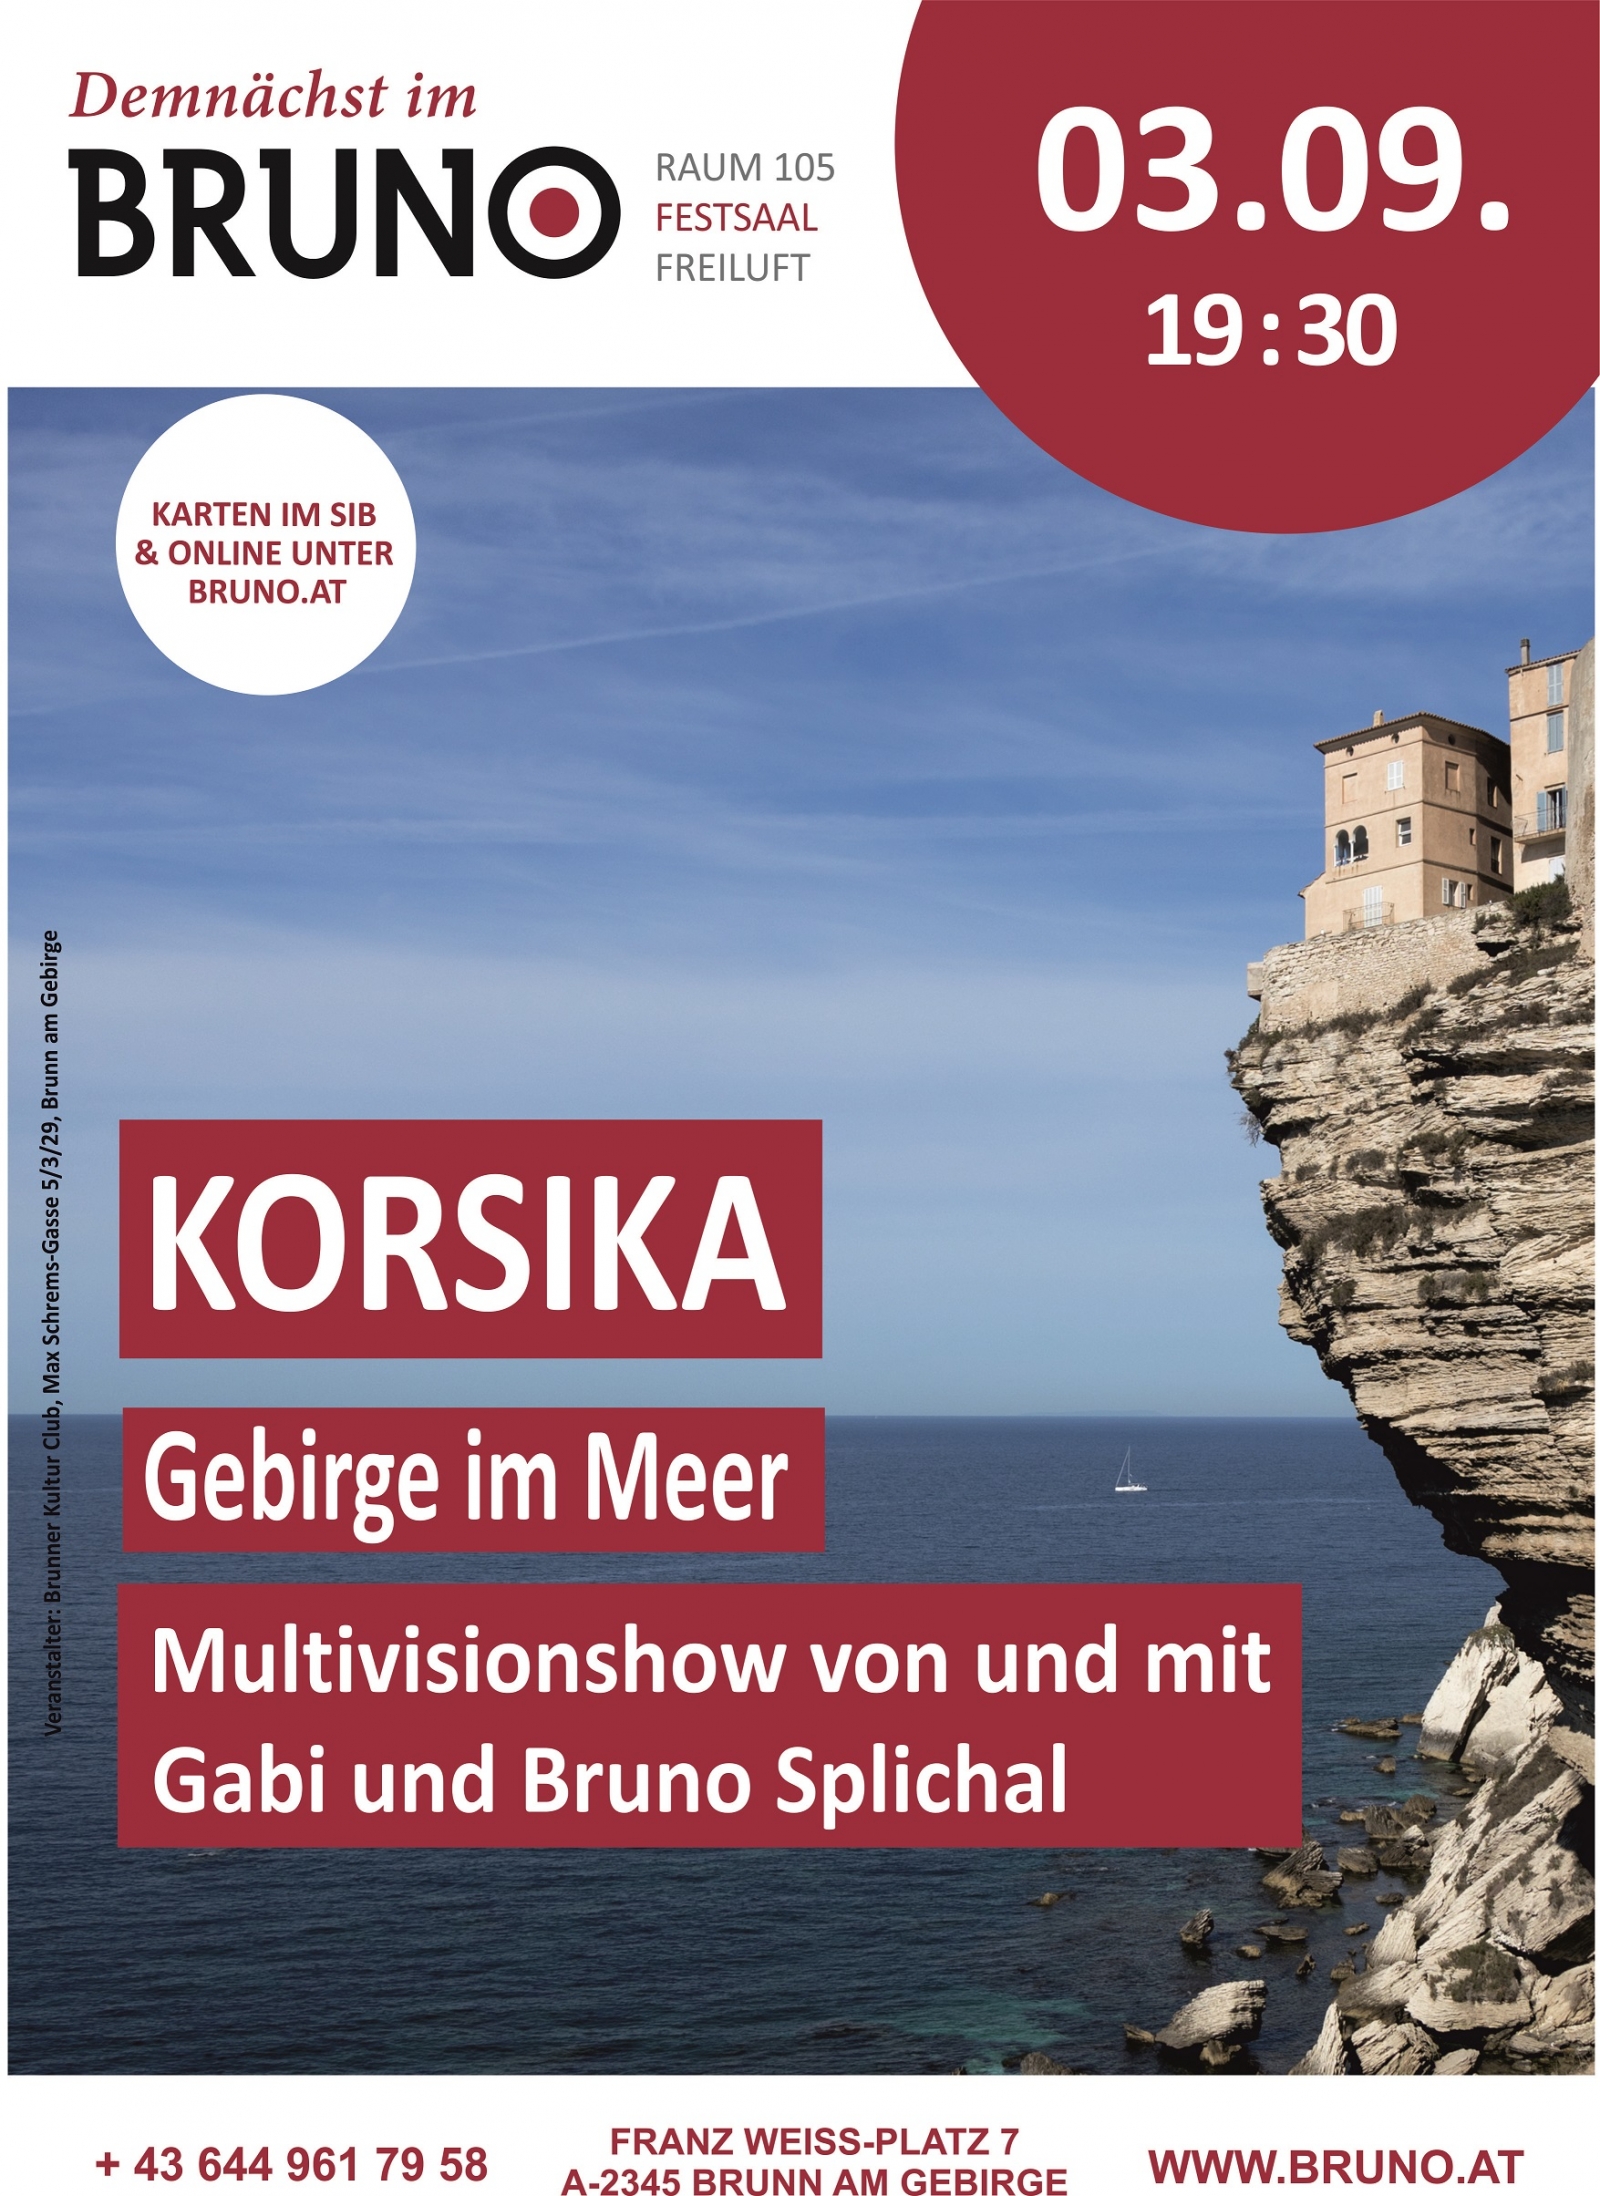 KORSIKA – Gebirge im Meer / Multivisionshow von und mit Gabi und Bruno Splichal